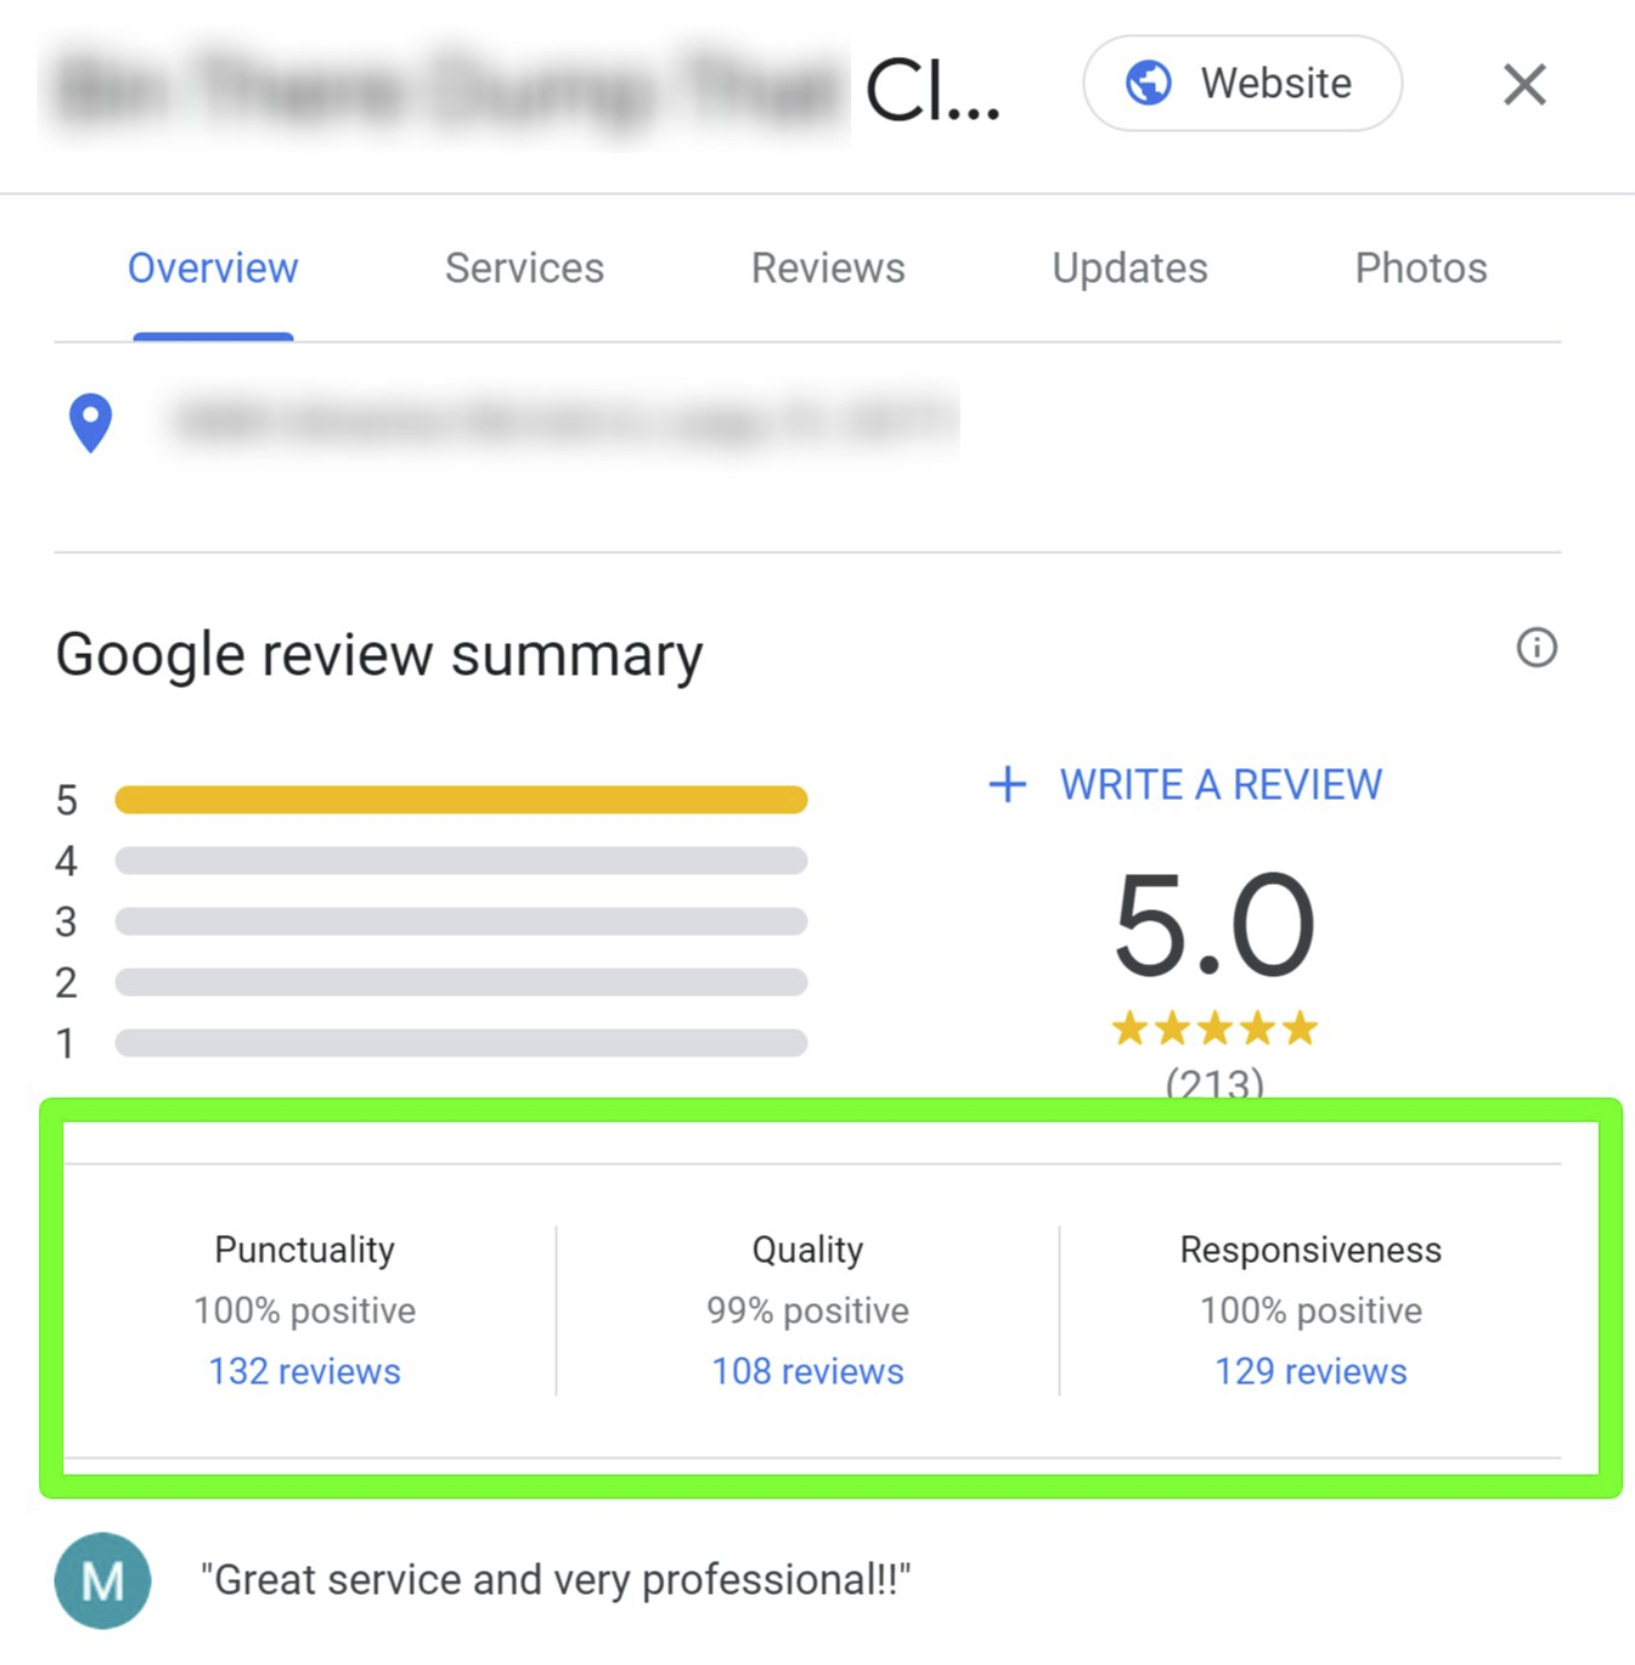 Neue Zusammenfassung von positiven Google-Bewertungen nach Kriterien